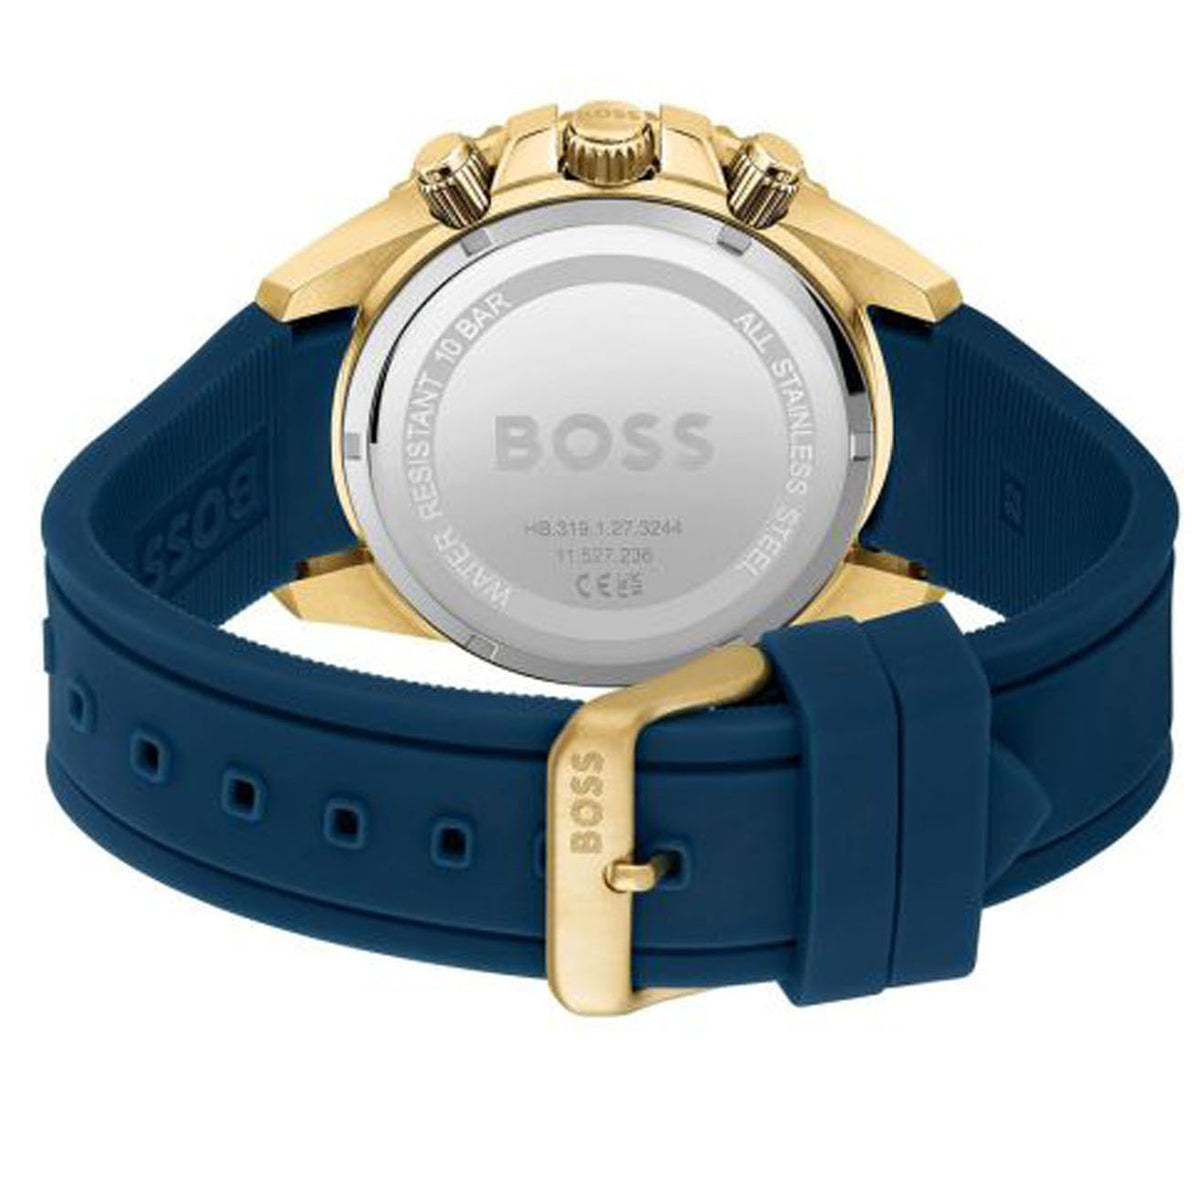 Boss - Admiral - HB151.3965